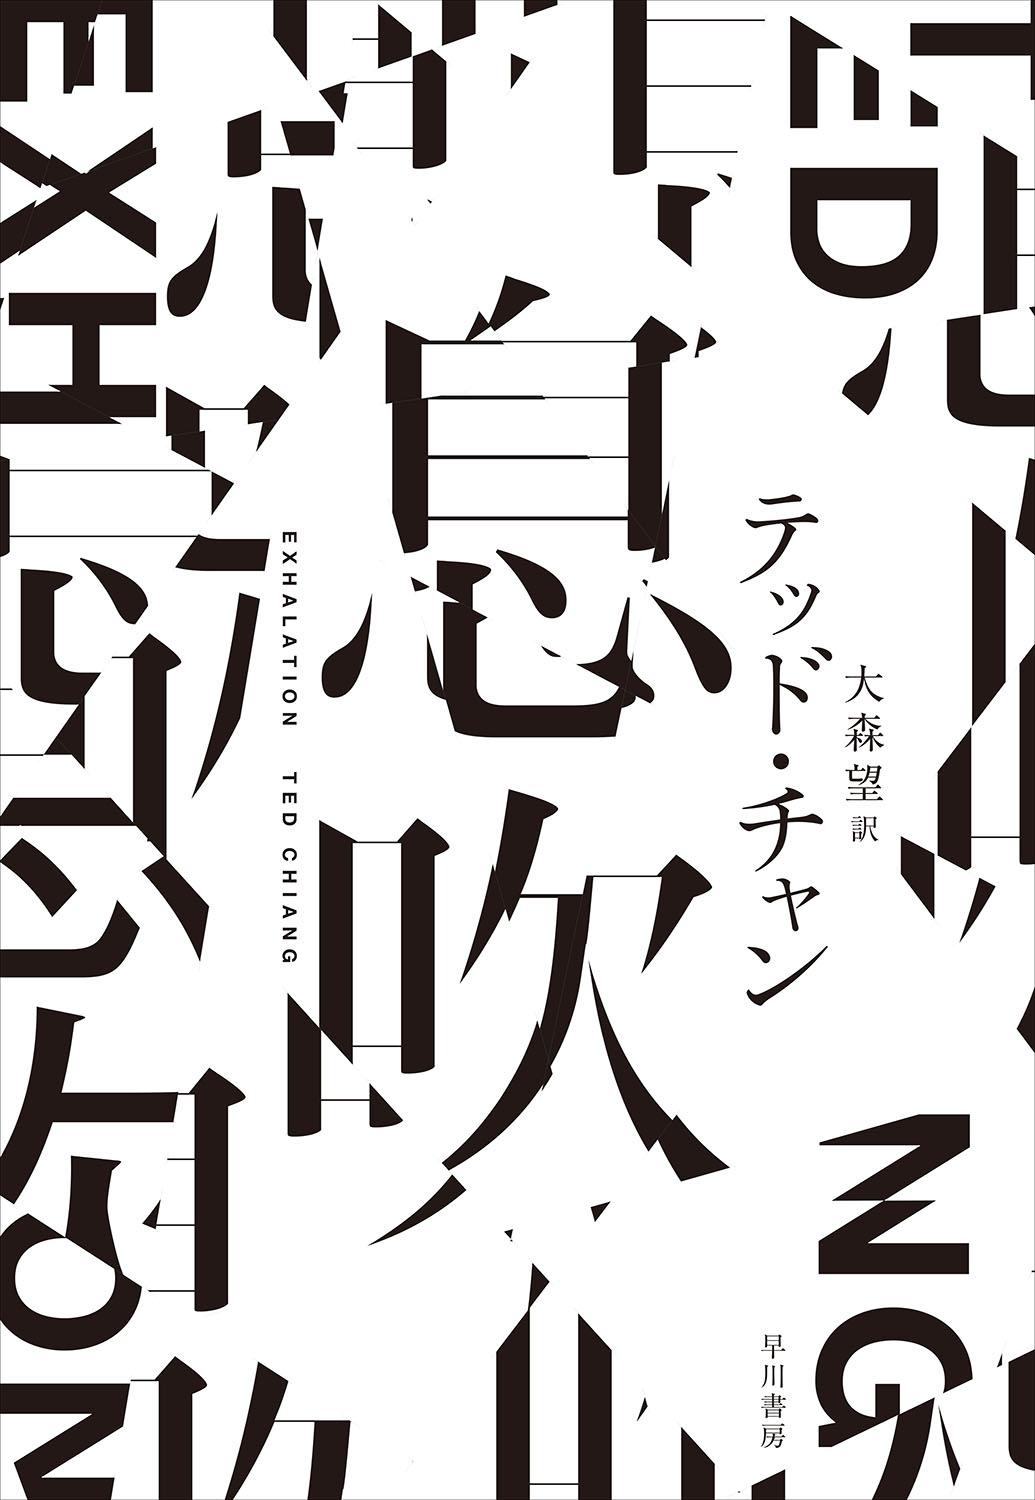 日本語のデザインの可能性を探る『もじ イメージ Graphic 展』 - Slide:4